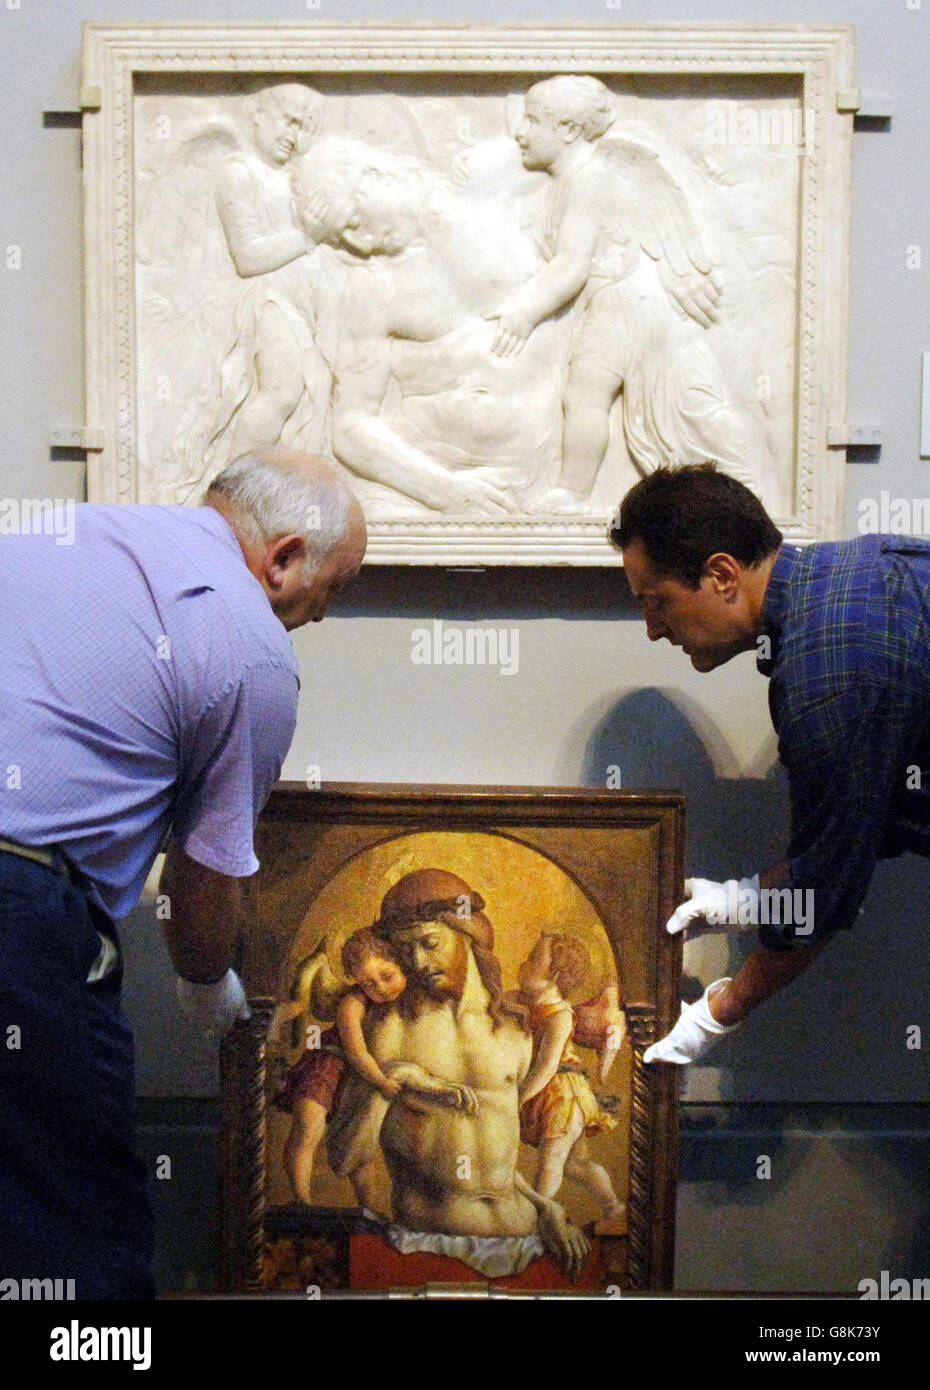 Le « Christ mort soutenu par deux Anges » de Crivelli est mis en place à côté du relief en marbre de Donatello « Christ mort entretenu par des Anges » qui a inspiré la peinture. Banque D'Images